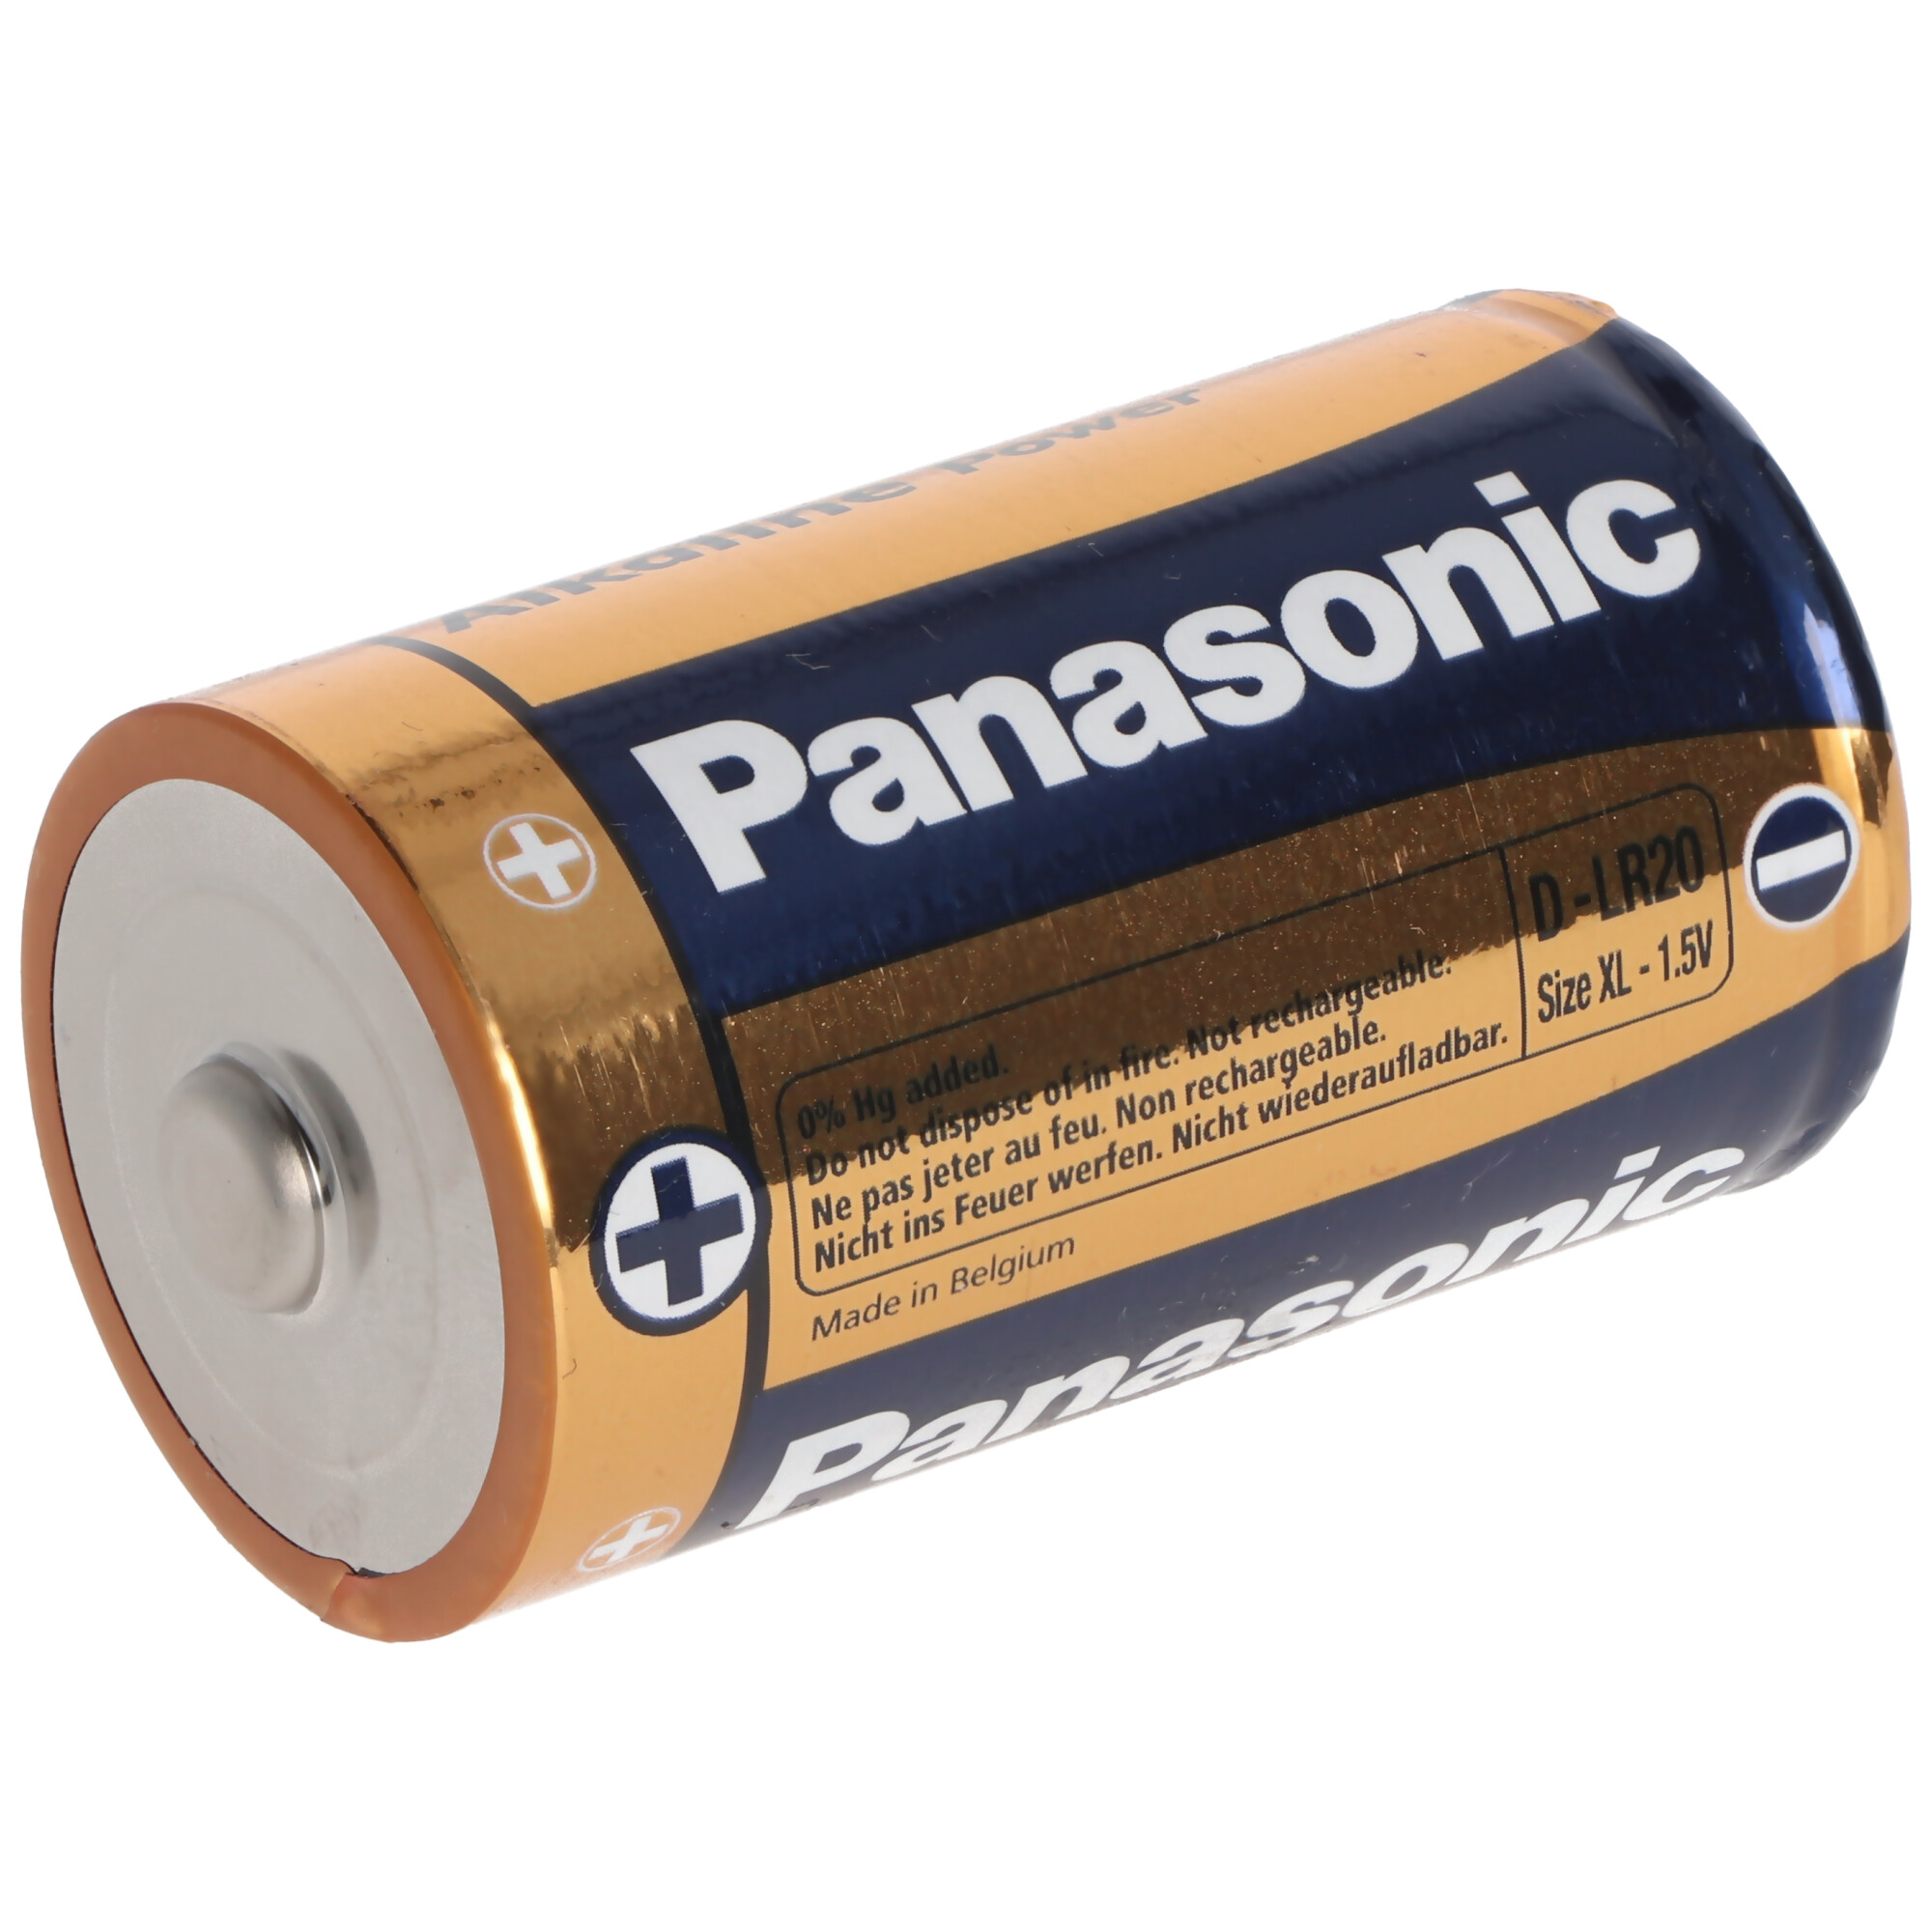 Panasonic Alkaline Power Mono D / LR20 2er Blister 1,5V